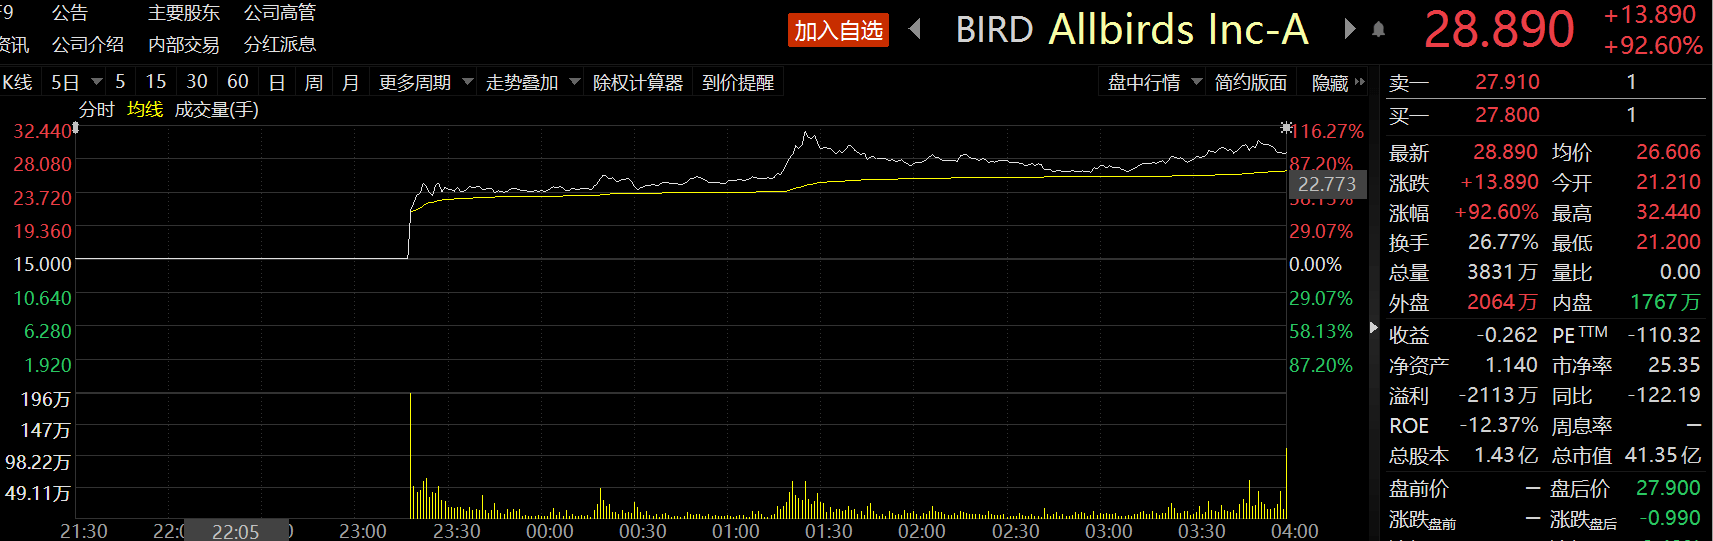 Allbirds登陆纳斯达克首日涨幅达92.6% 远超发行价